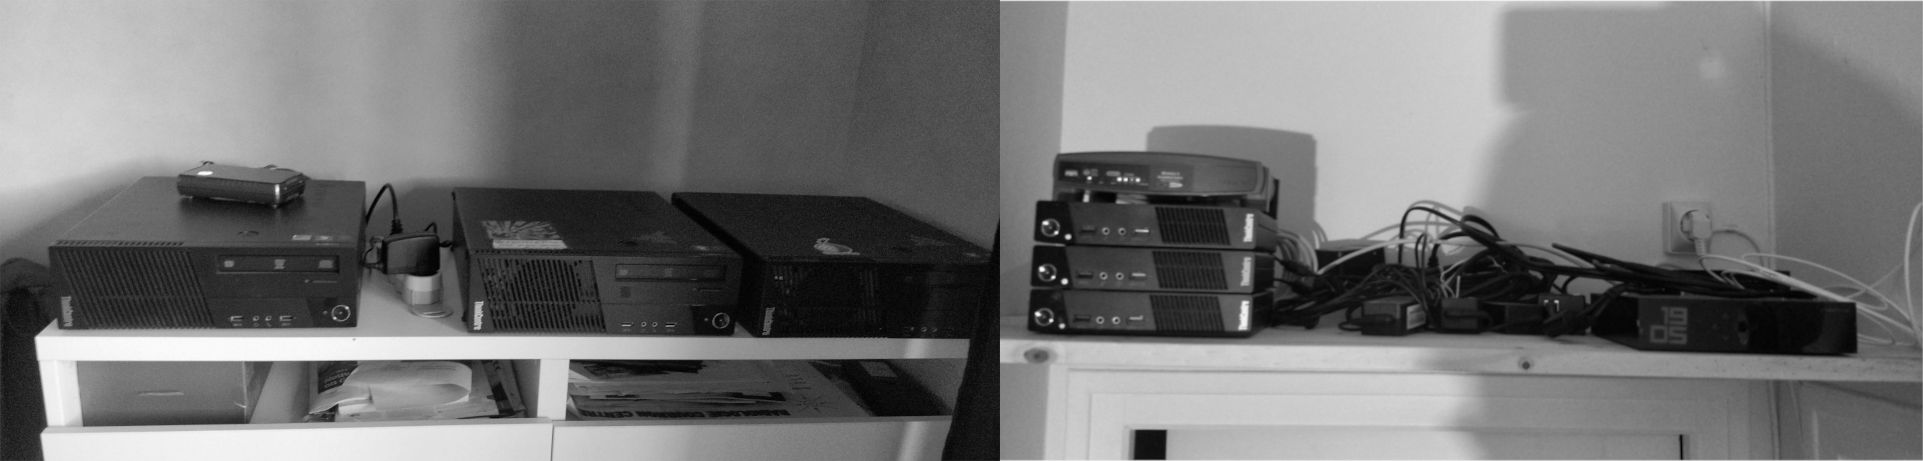 Une photo en noir et blanc de nos différents serveurs hébergés à domicile.